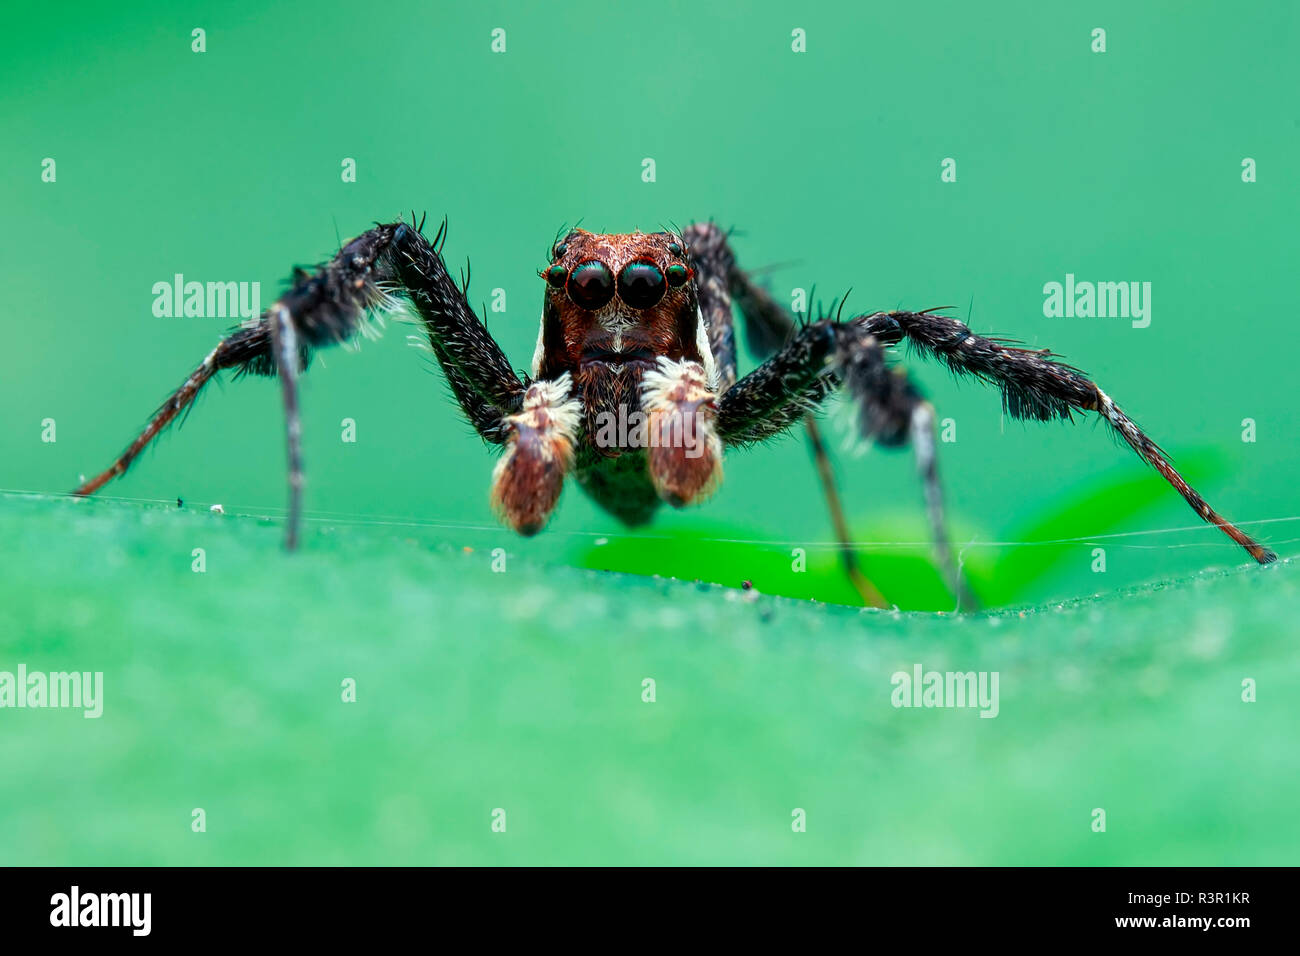 Retrato de un hombre araña saltando (Portia sp). Foto de stock